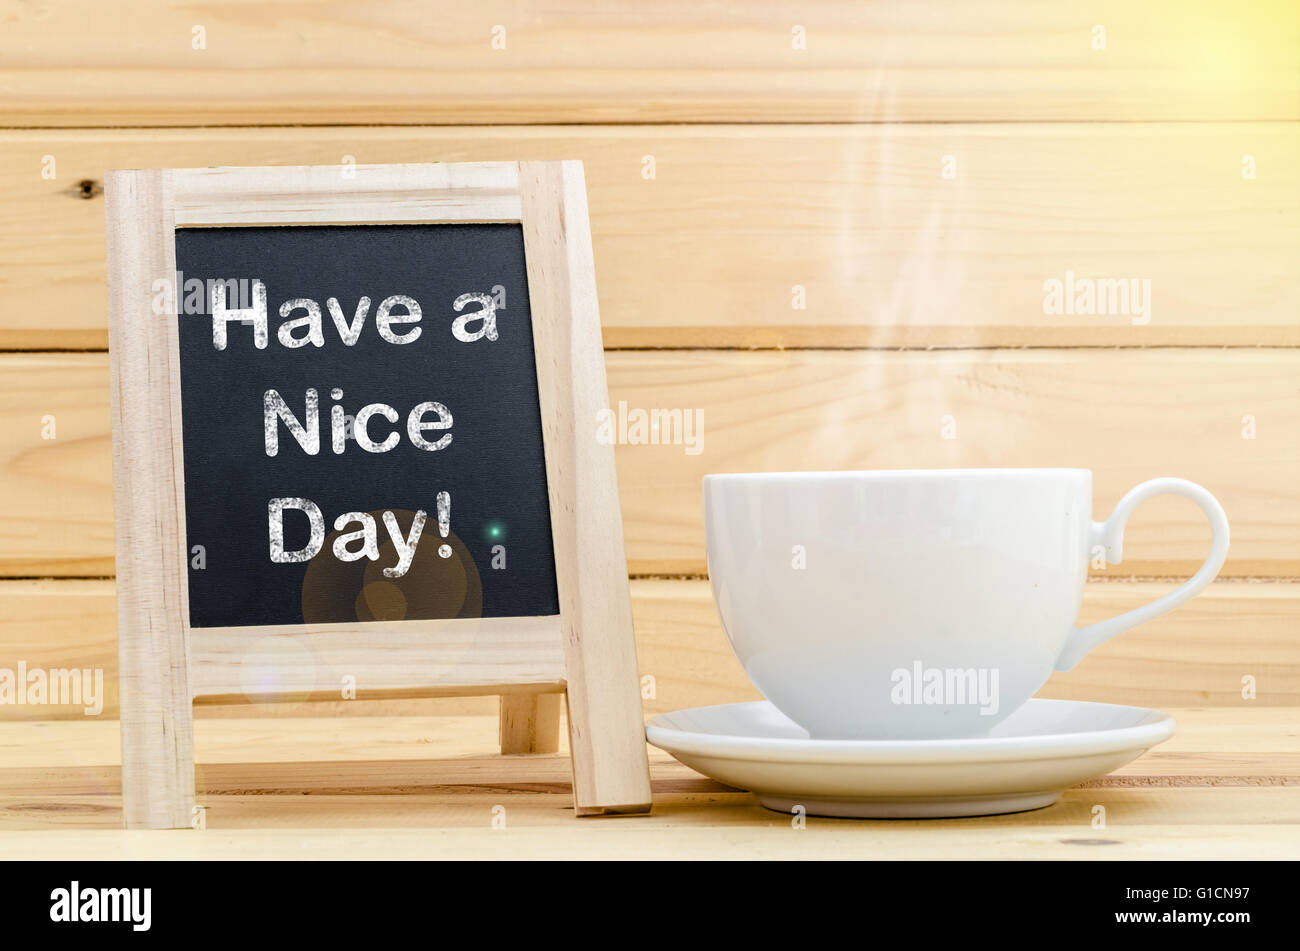 Haben Sie einen schönen Tag Wort auf Tafel und Kaffee in weiße Tasse mit Rauch. Tageslicht. Stockfoto